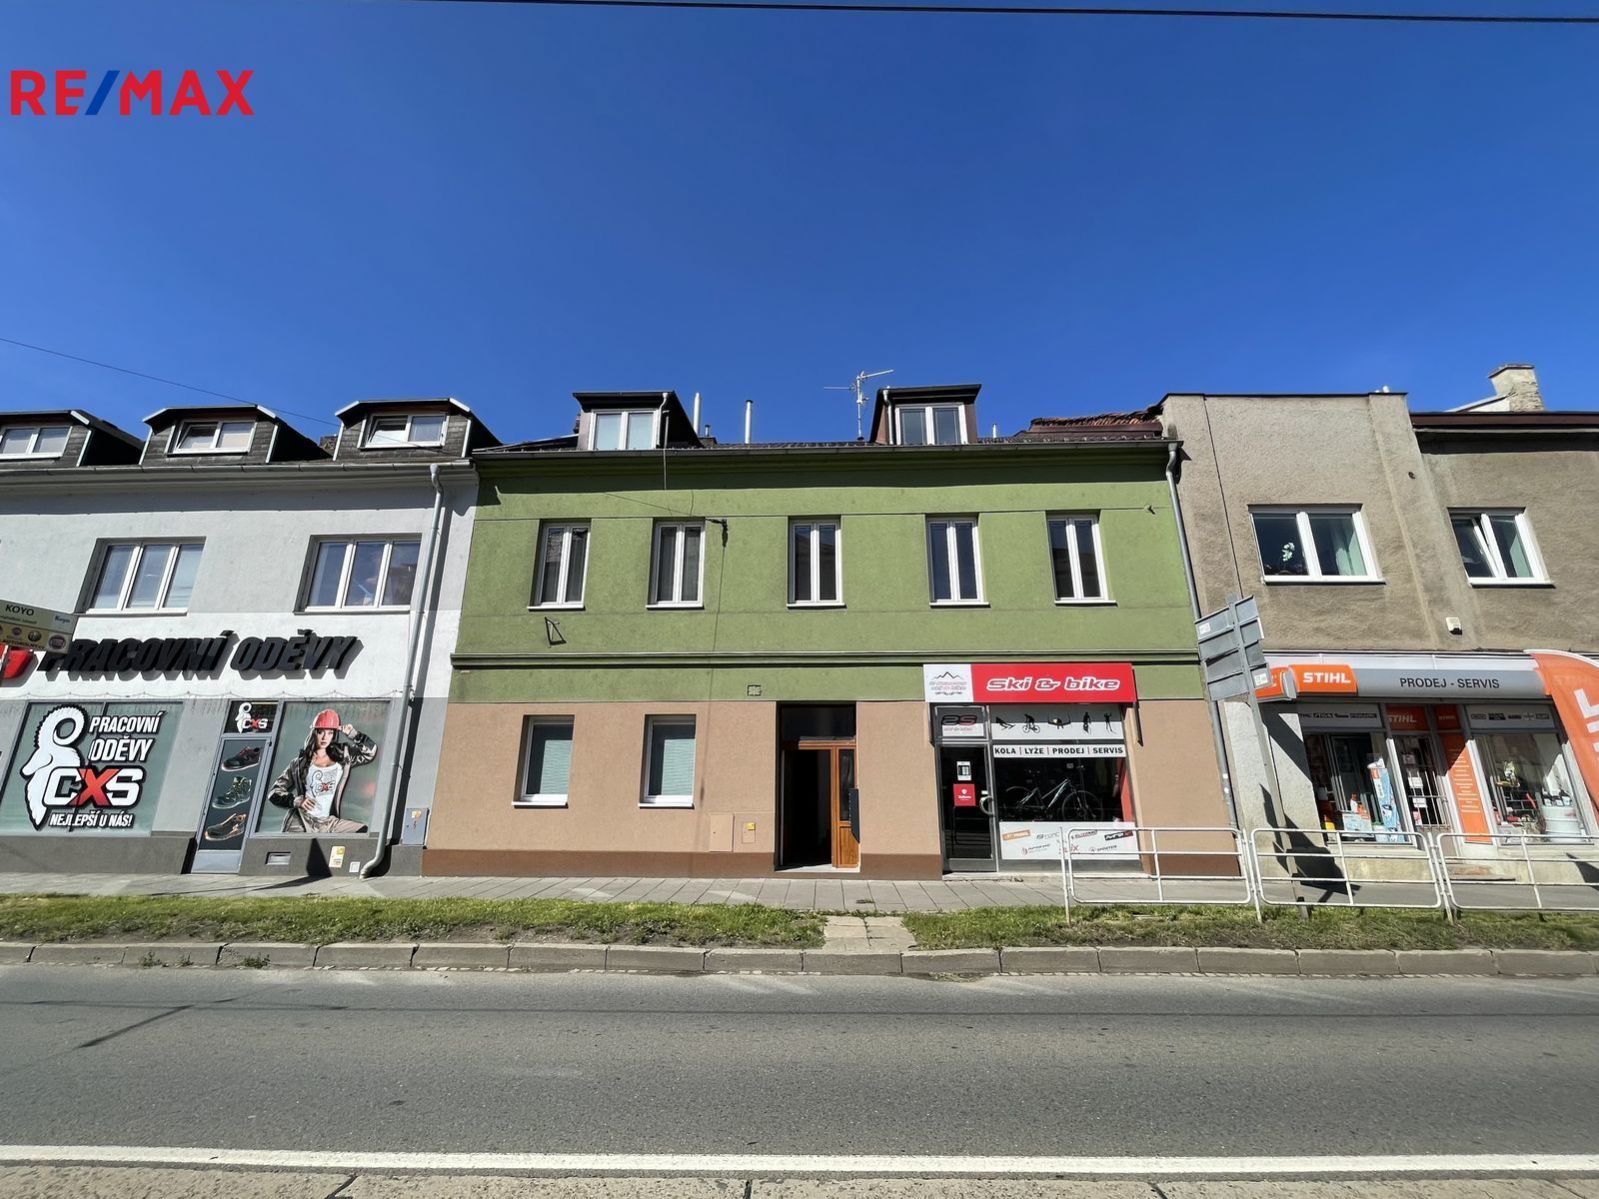 Prodej bytového domu (6 bytů, 1 nebytový prostor) na ulici Hodolanská, Olomouc, obrázek č. 1